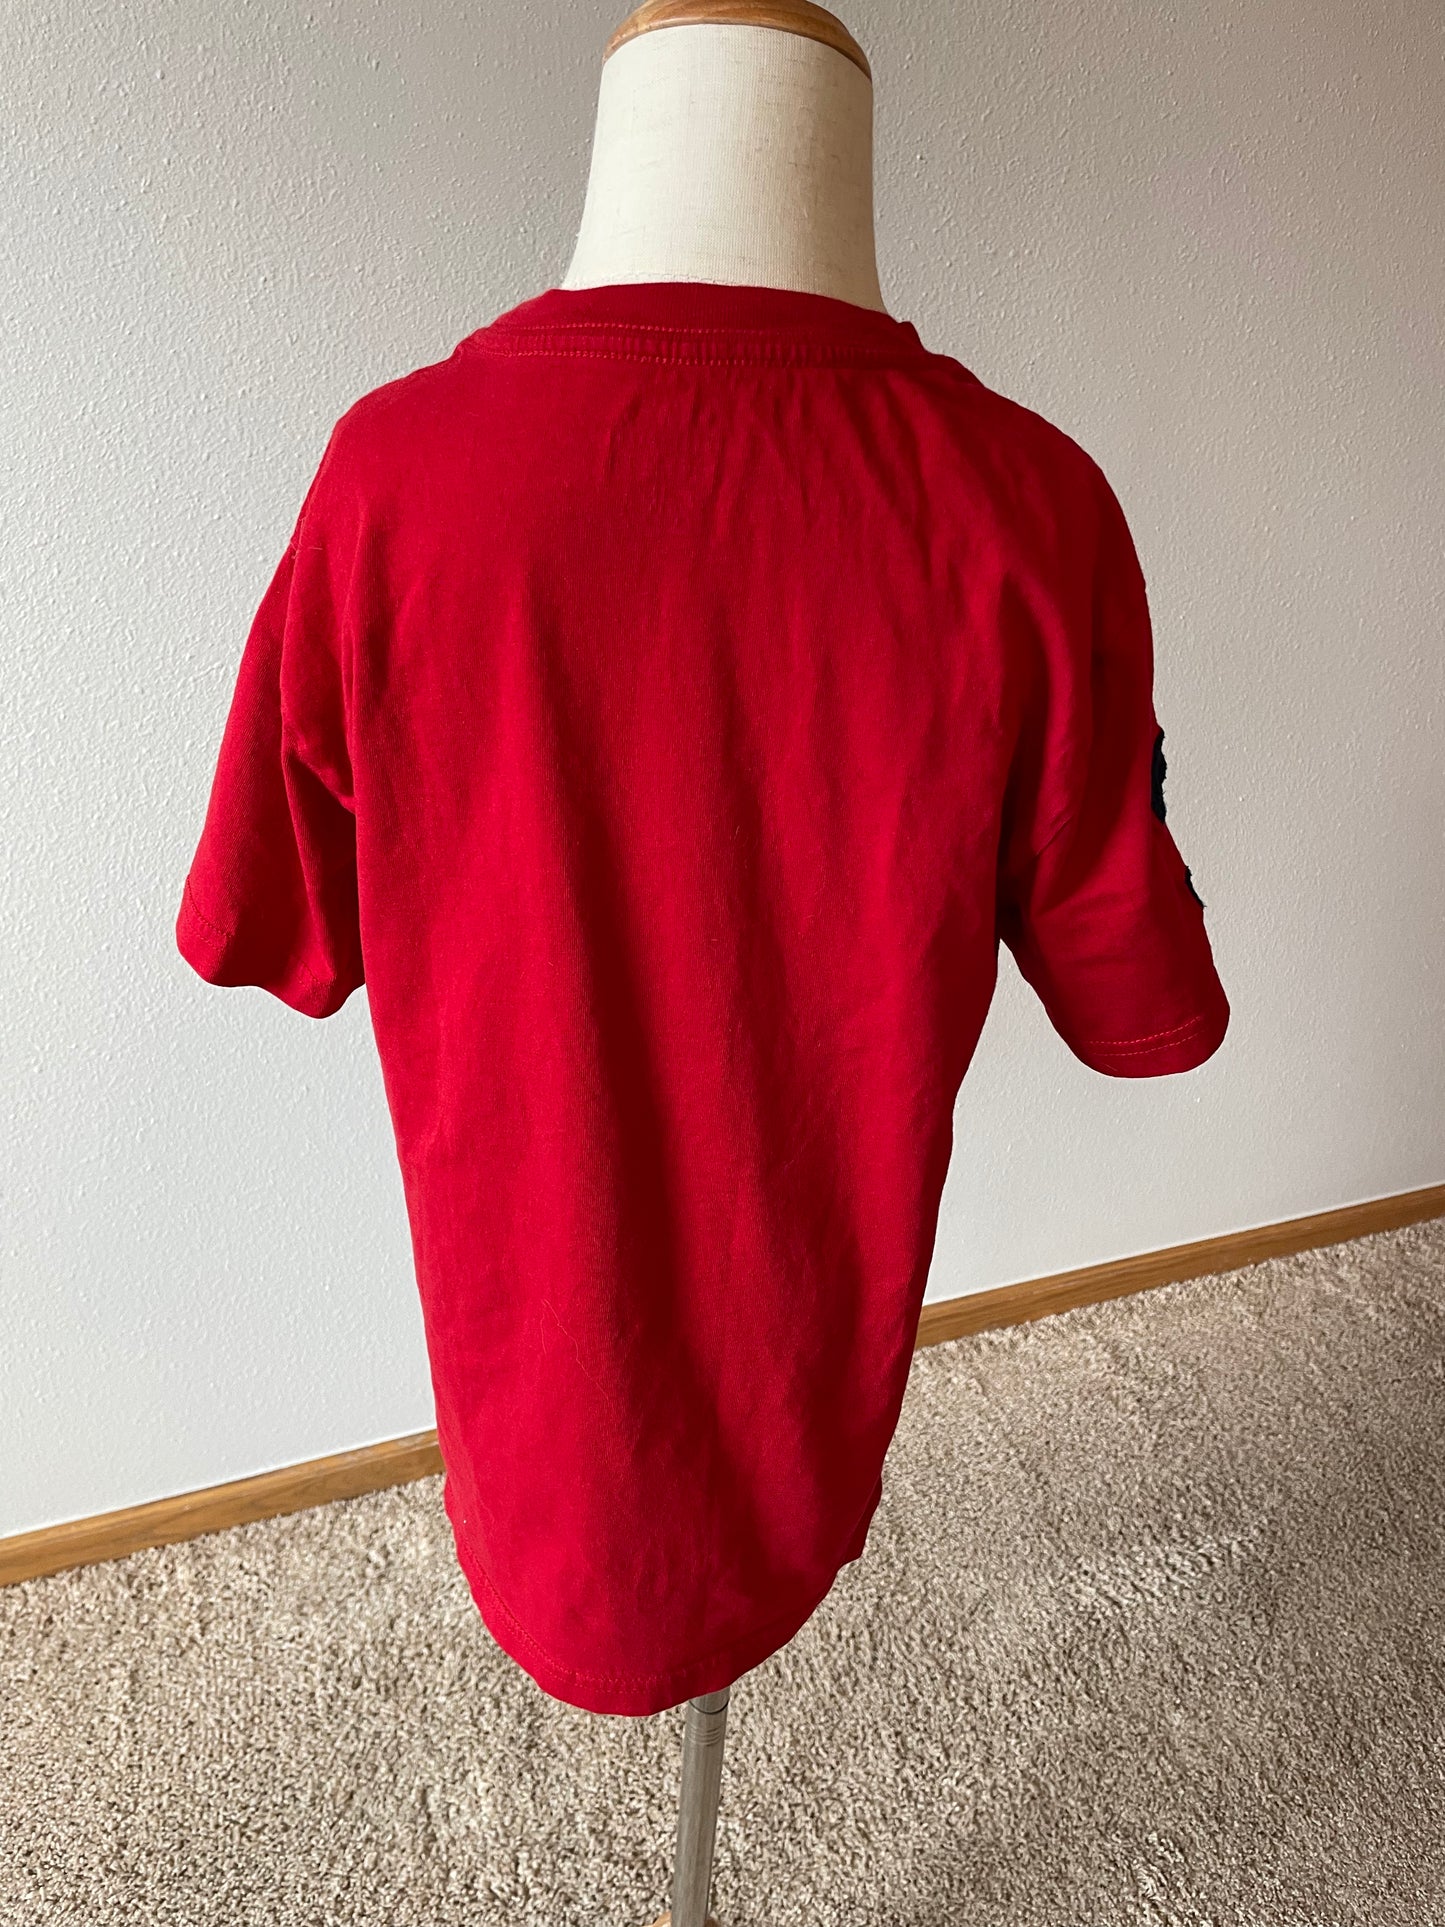 Polo Ralph Lauren Boys Red T-Shirt (YSM)